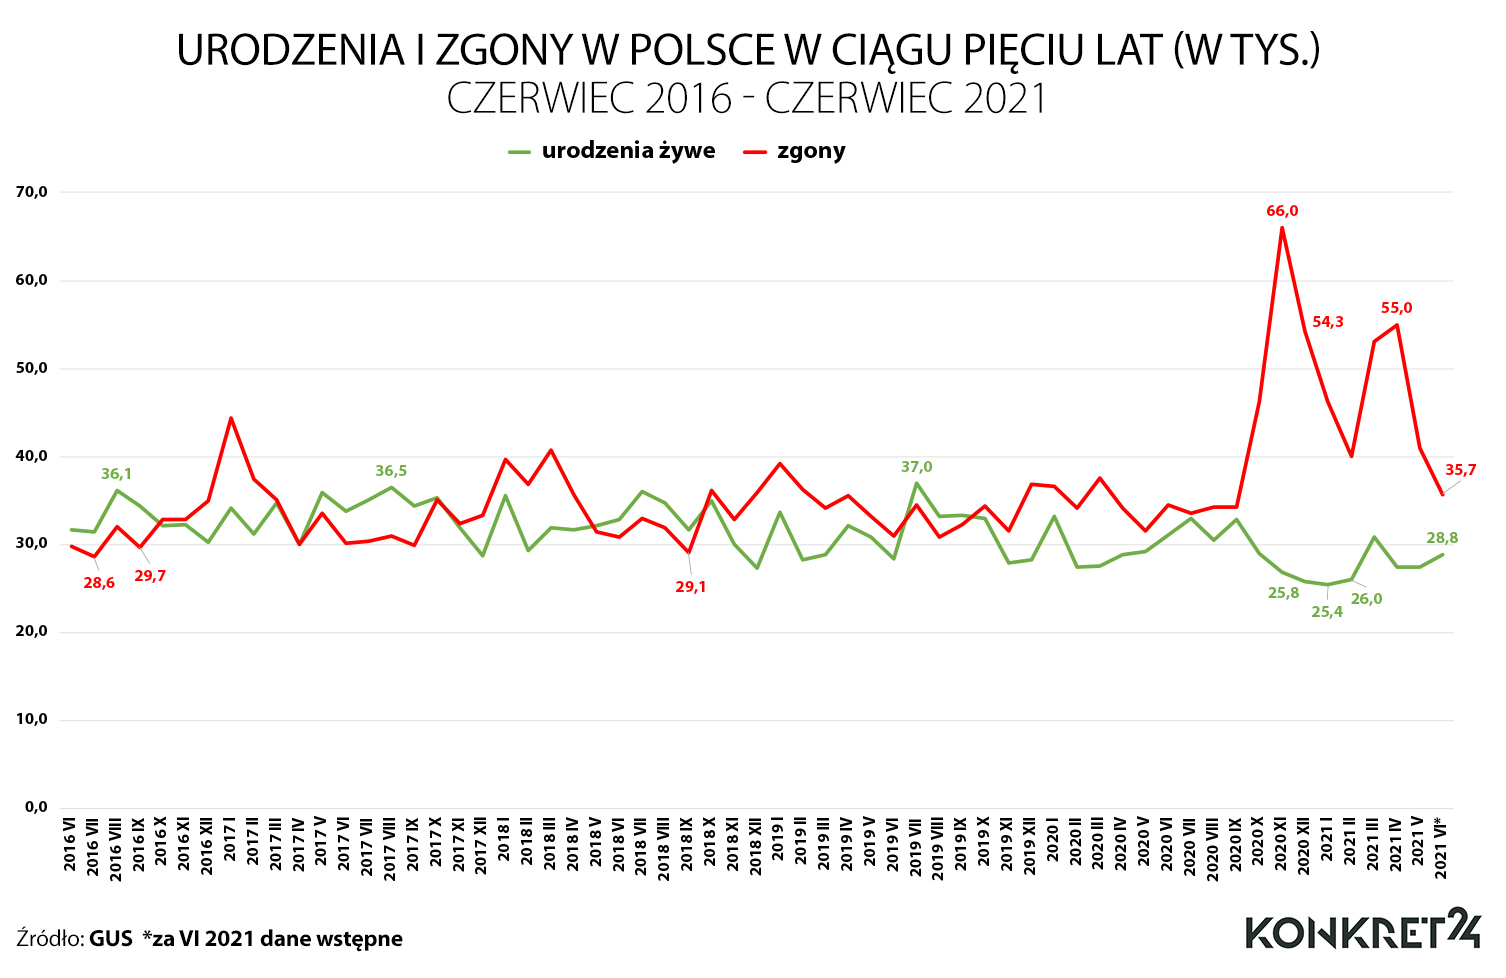 Urodzenia i zgony W Polsce w okresie czerwiec 2016 - czerwiec 2021 